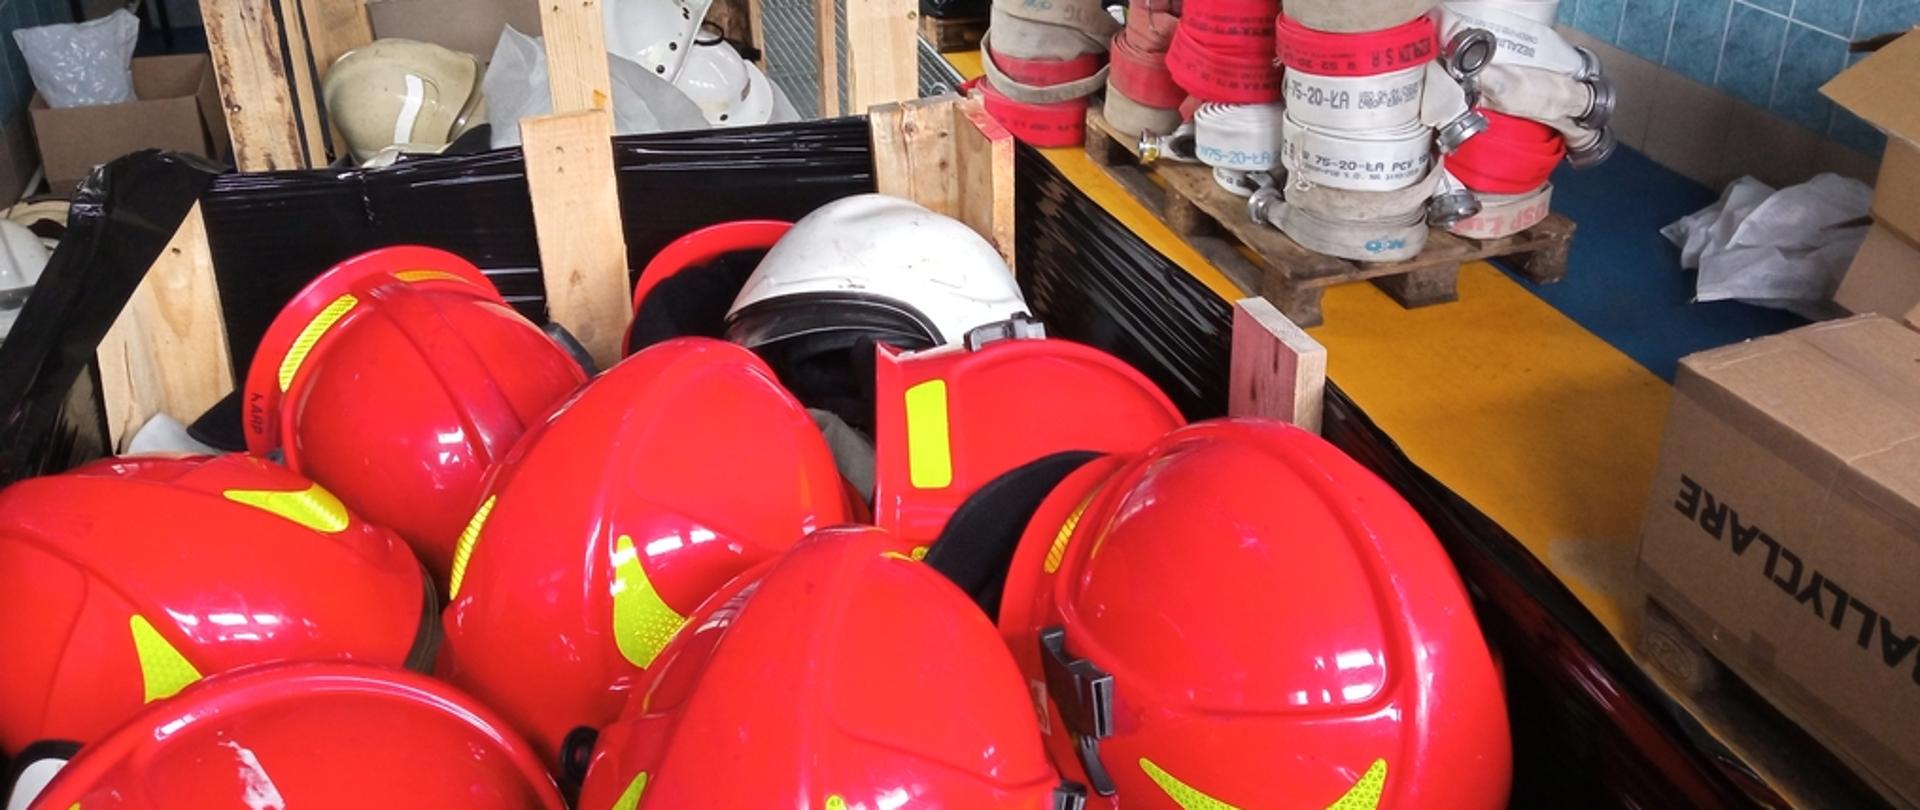 Na zdjęciu widoczne hełmy strażackie koloru czerwonego i białego w oddali węże pożarnicze spakowane na paletach przygotowane do transportu dla strażaków z Ukrainy.